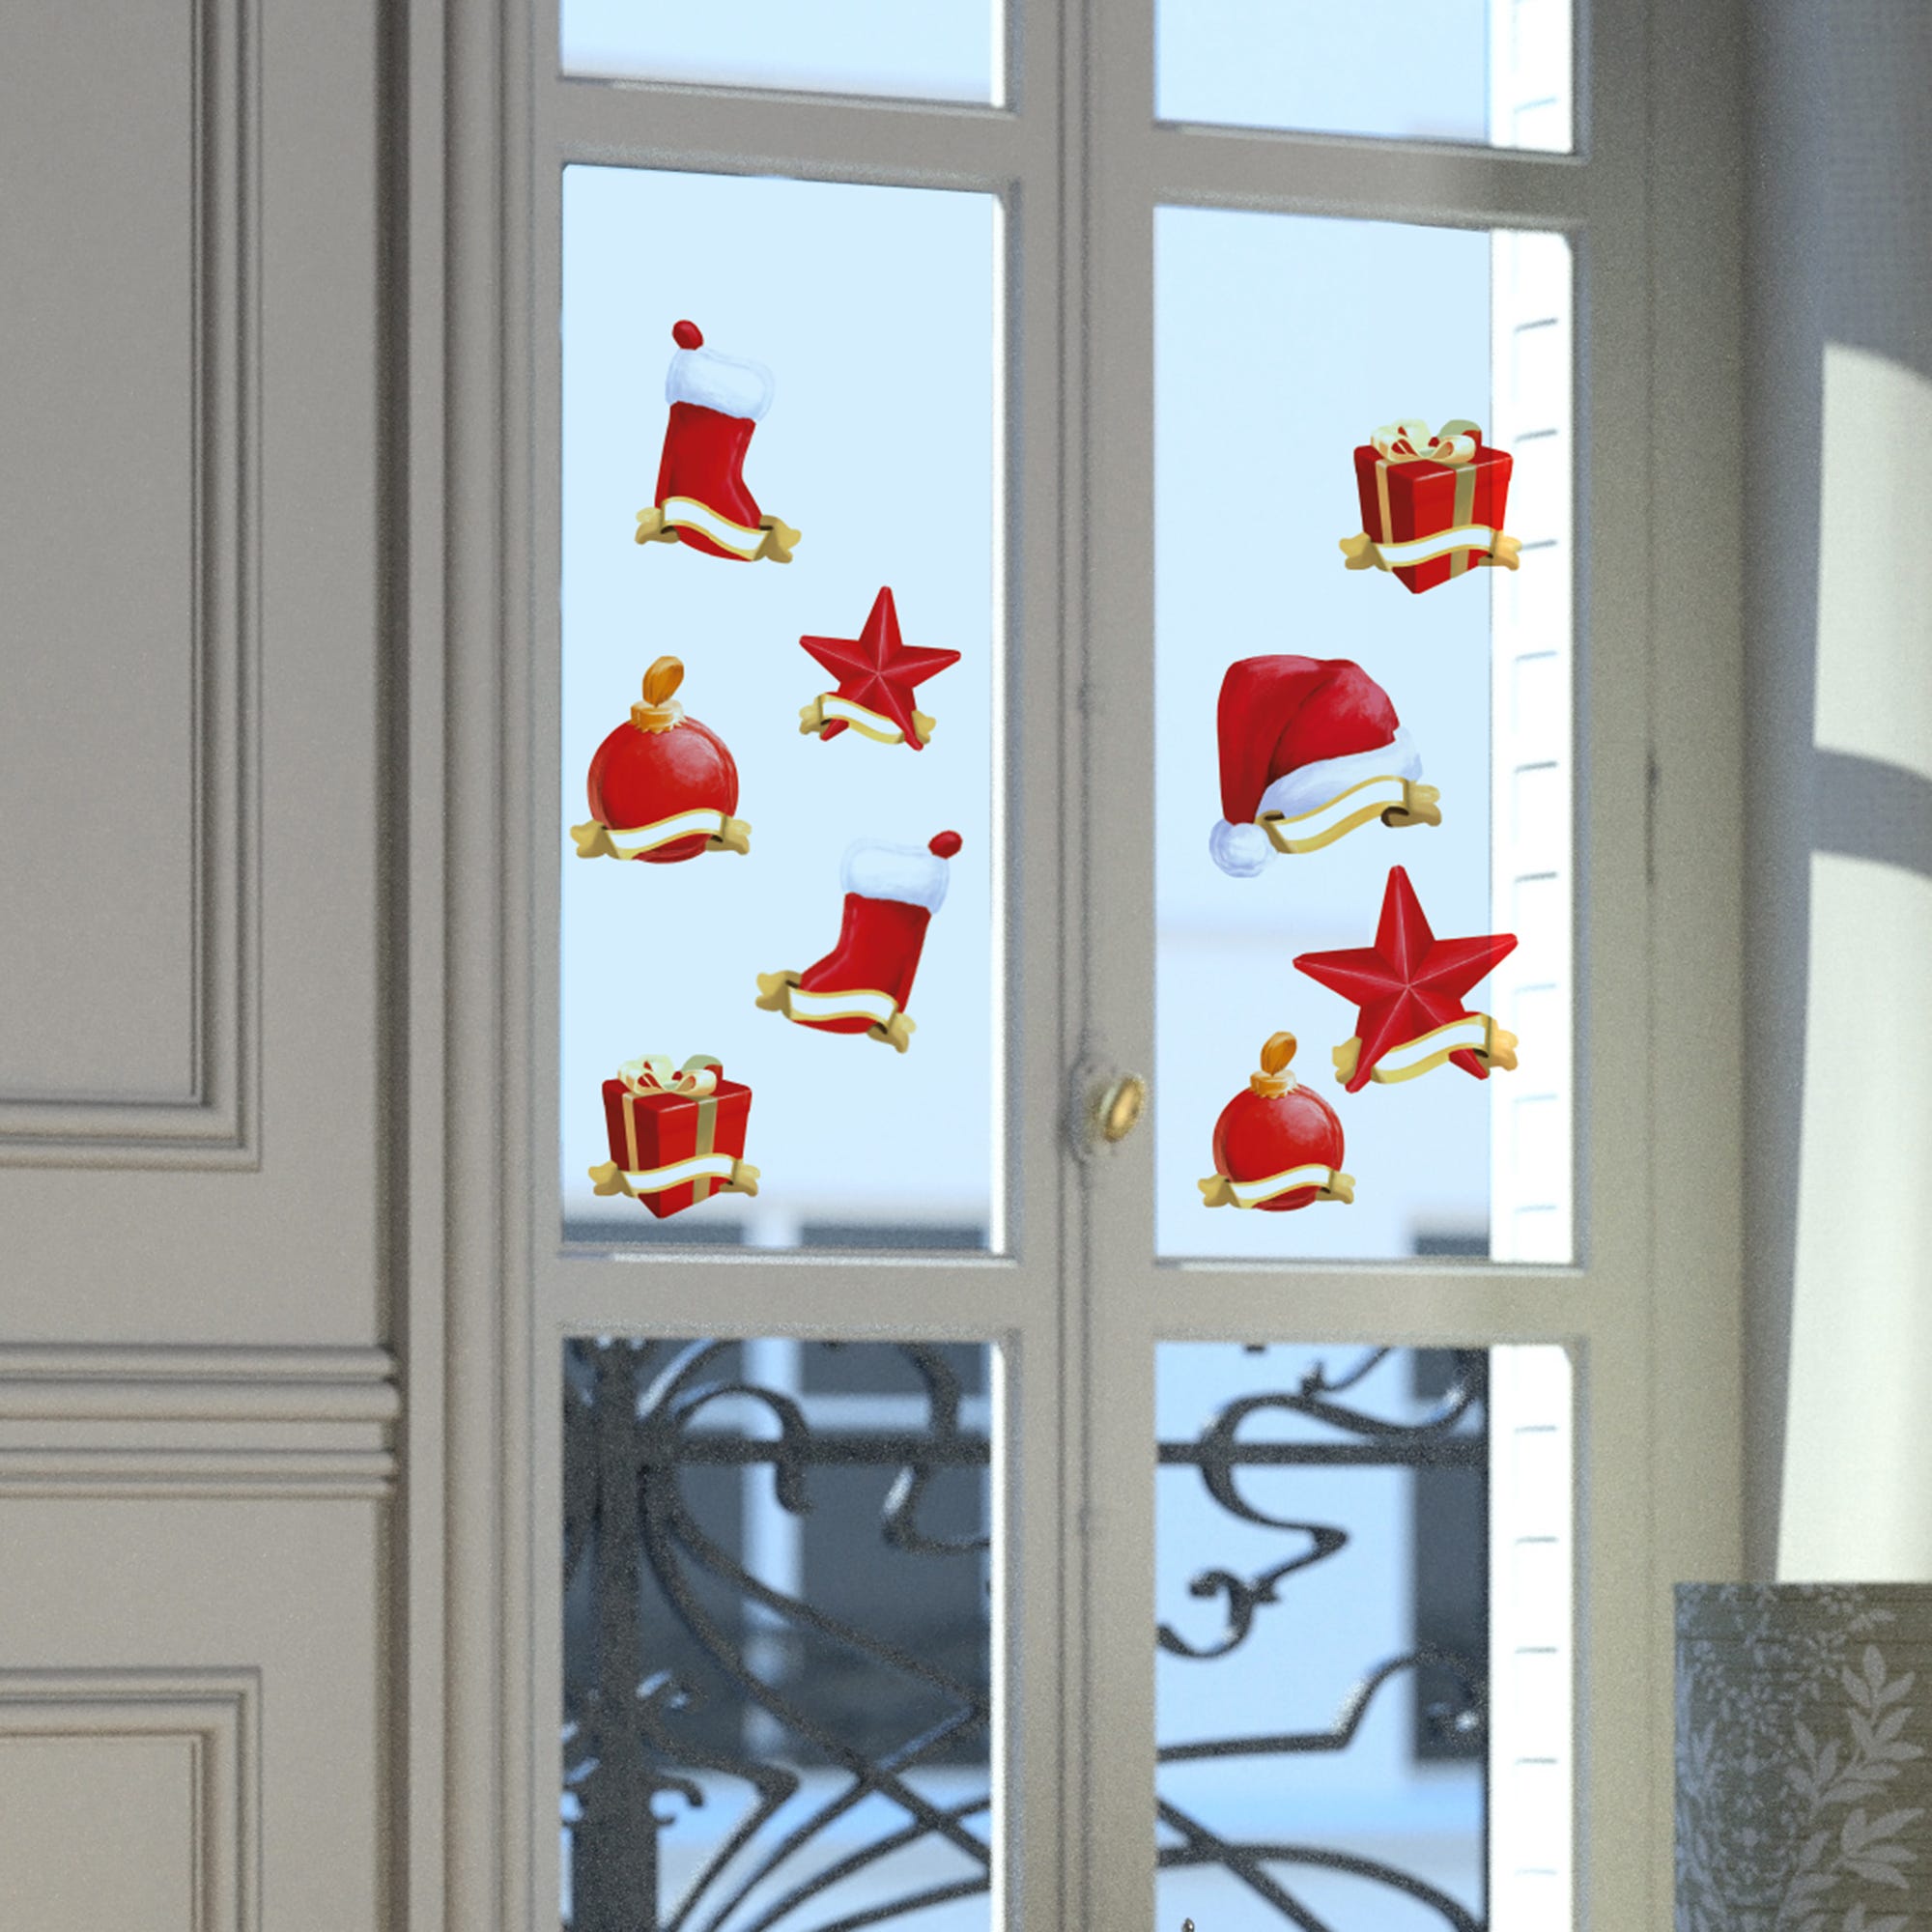 Stickers de fenêtre pour décorer les vitres à Noël